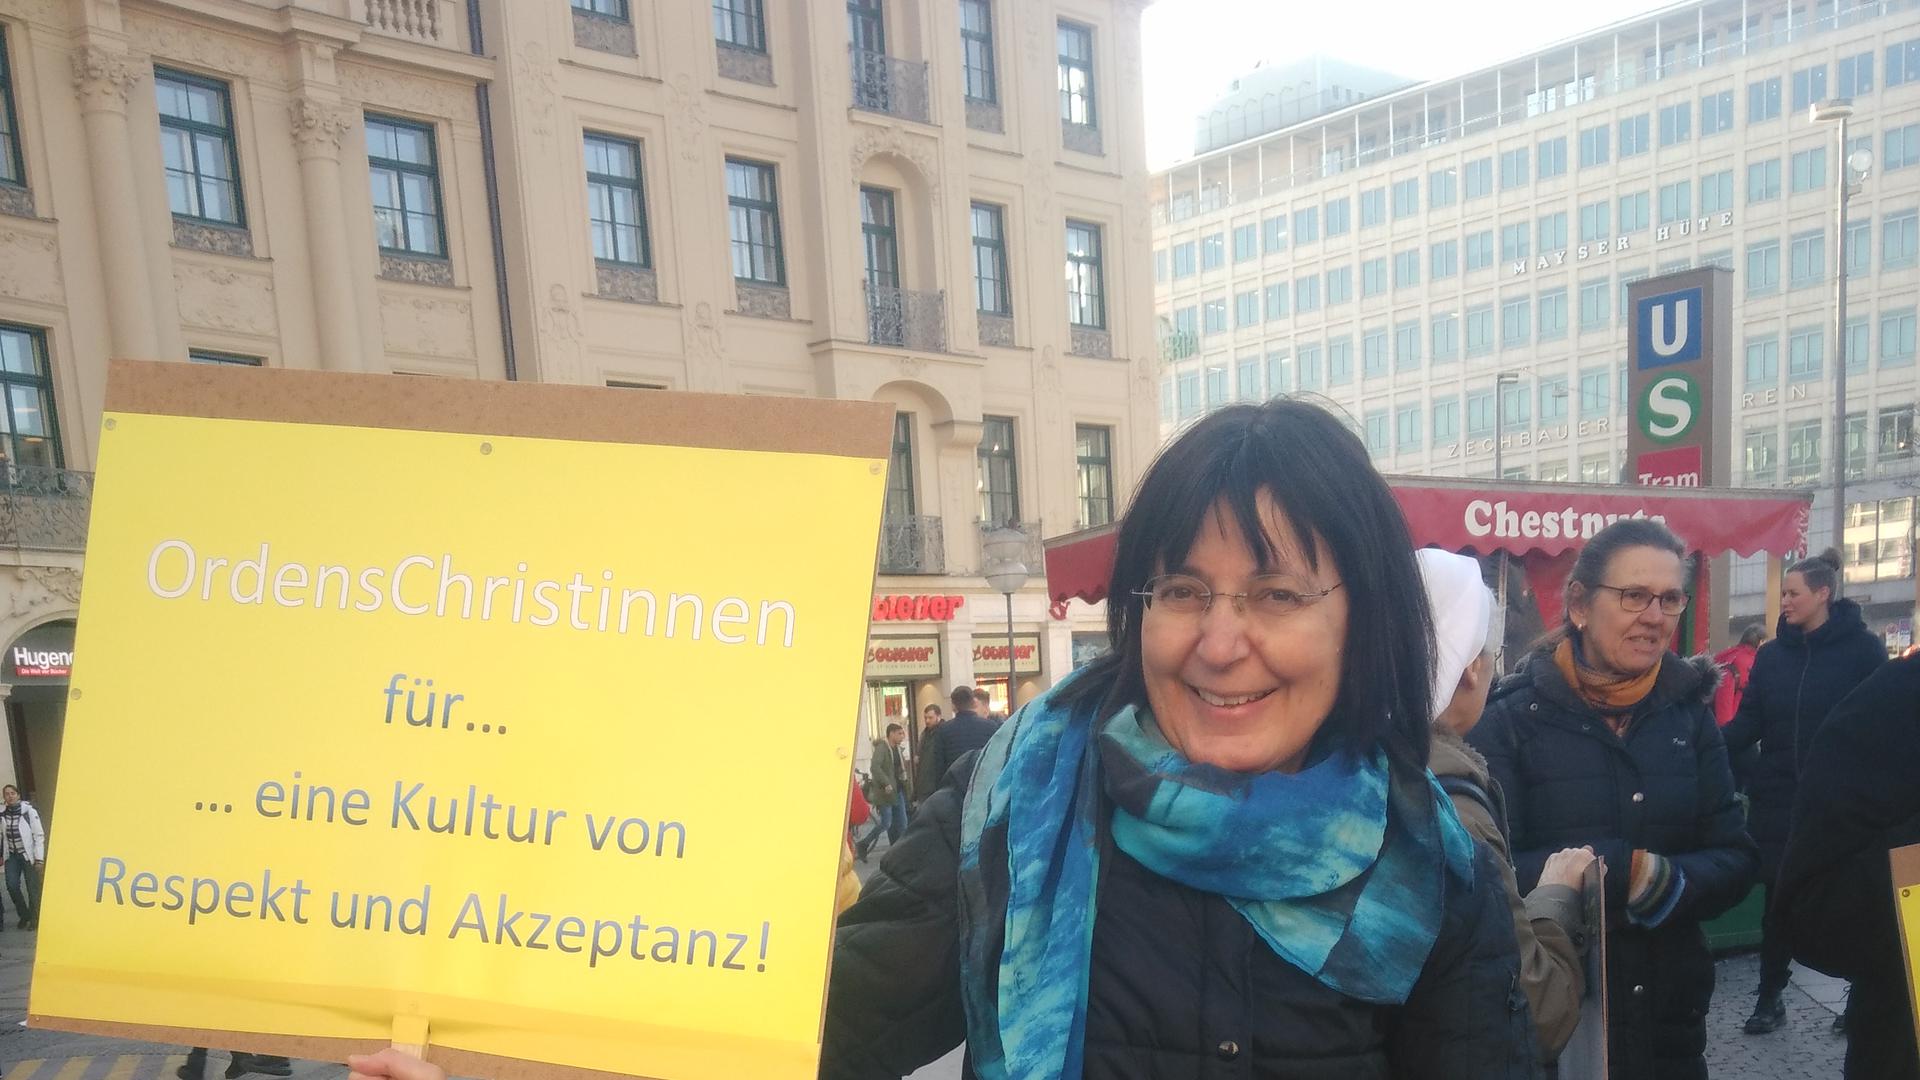 Susanne Schneider hält ein Plakat hoch: „OrdensChristinnen für eine Kultur von Respekt und Akzeptanz!”